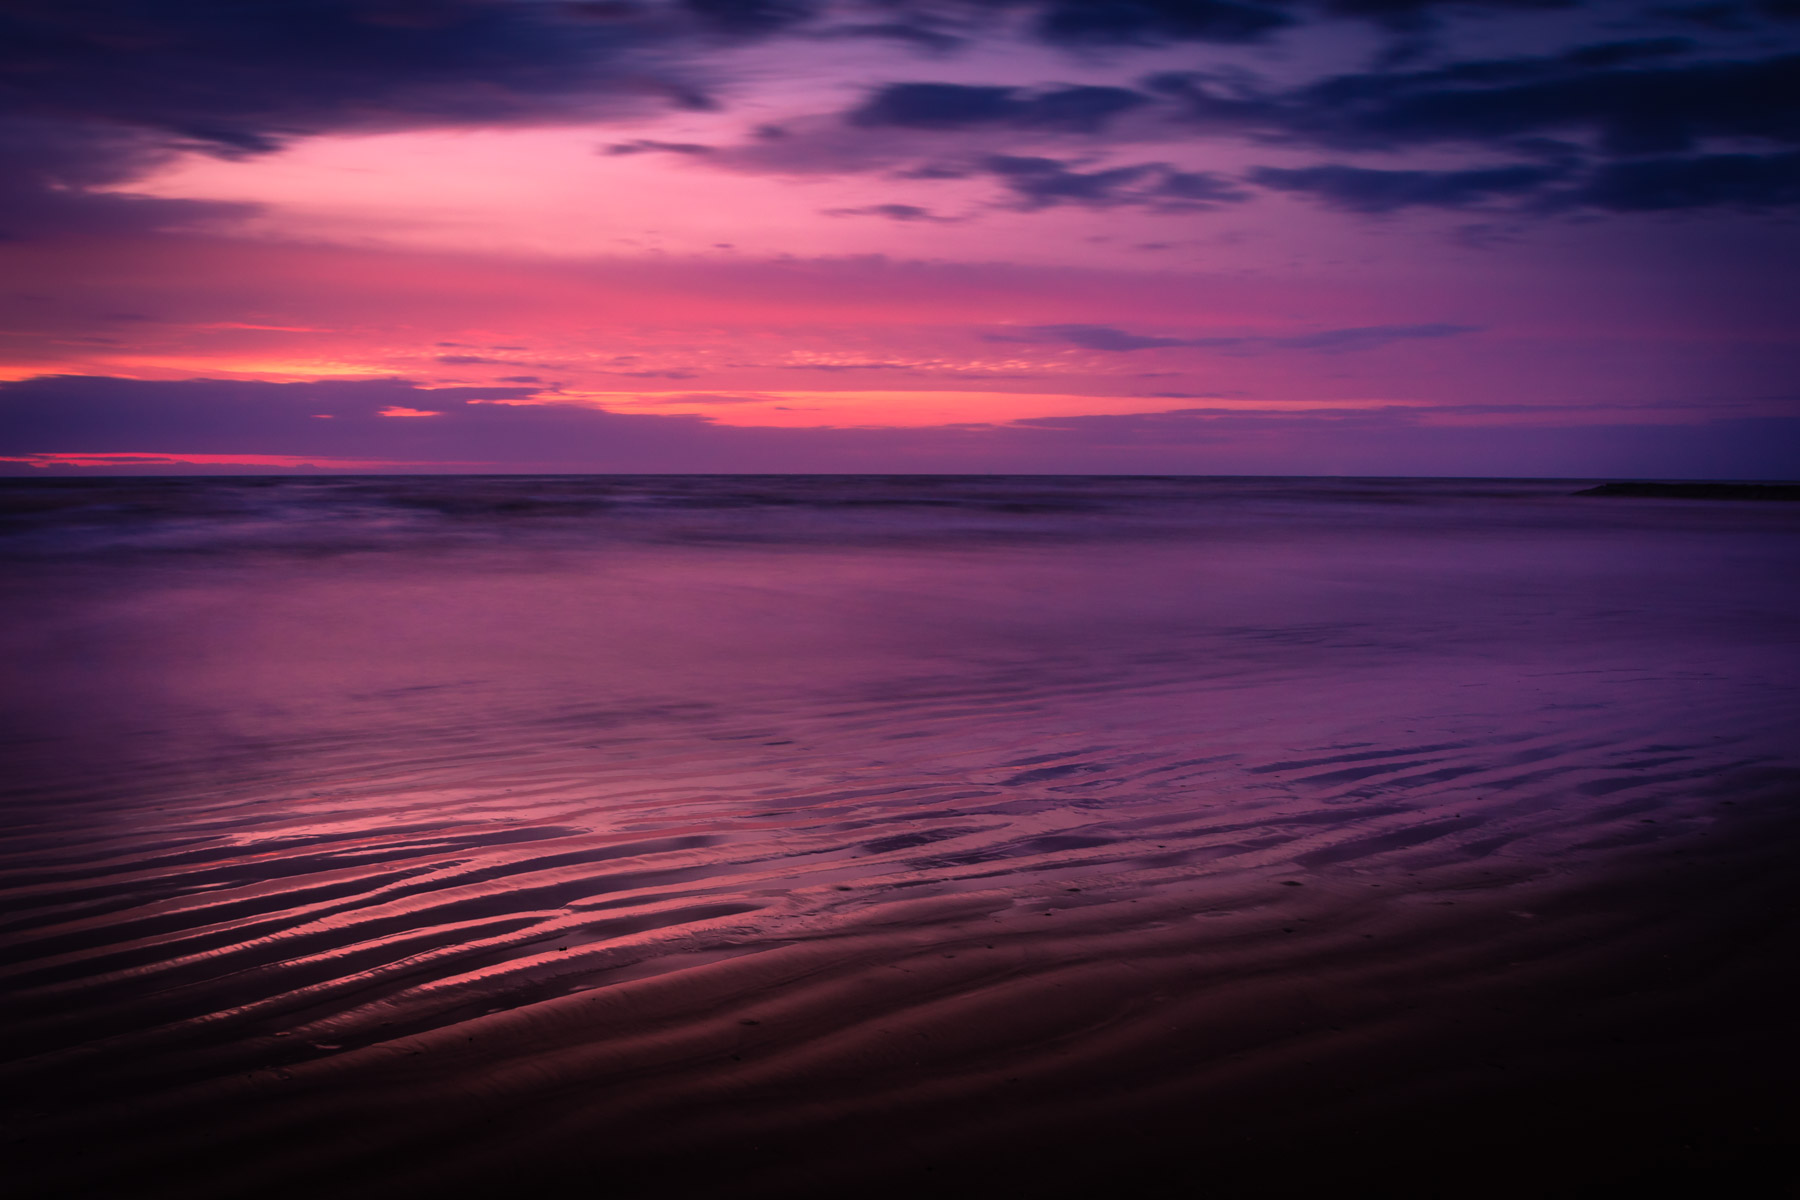 The Silent Sea | Galveston | 75CentralPhotography